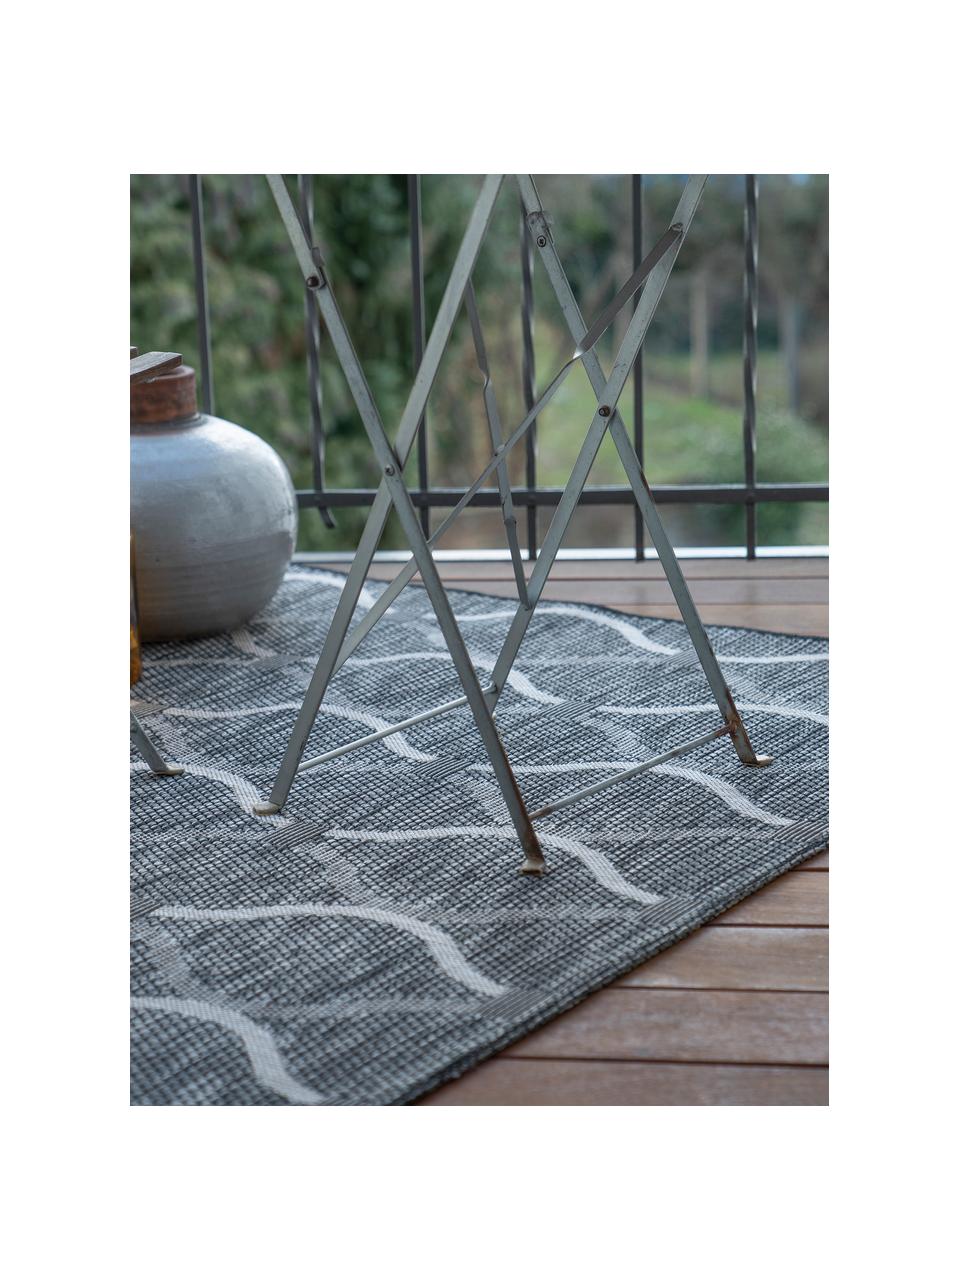 Interiérový a exterirérový koberec s grafickým vzorem Muster, 100 % polypropylen, Taupe, tlumeně bílá, Š 80 cm, D 150 cm (velikost XS)